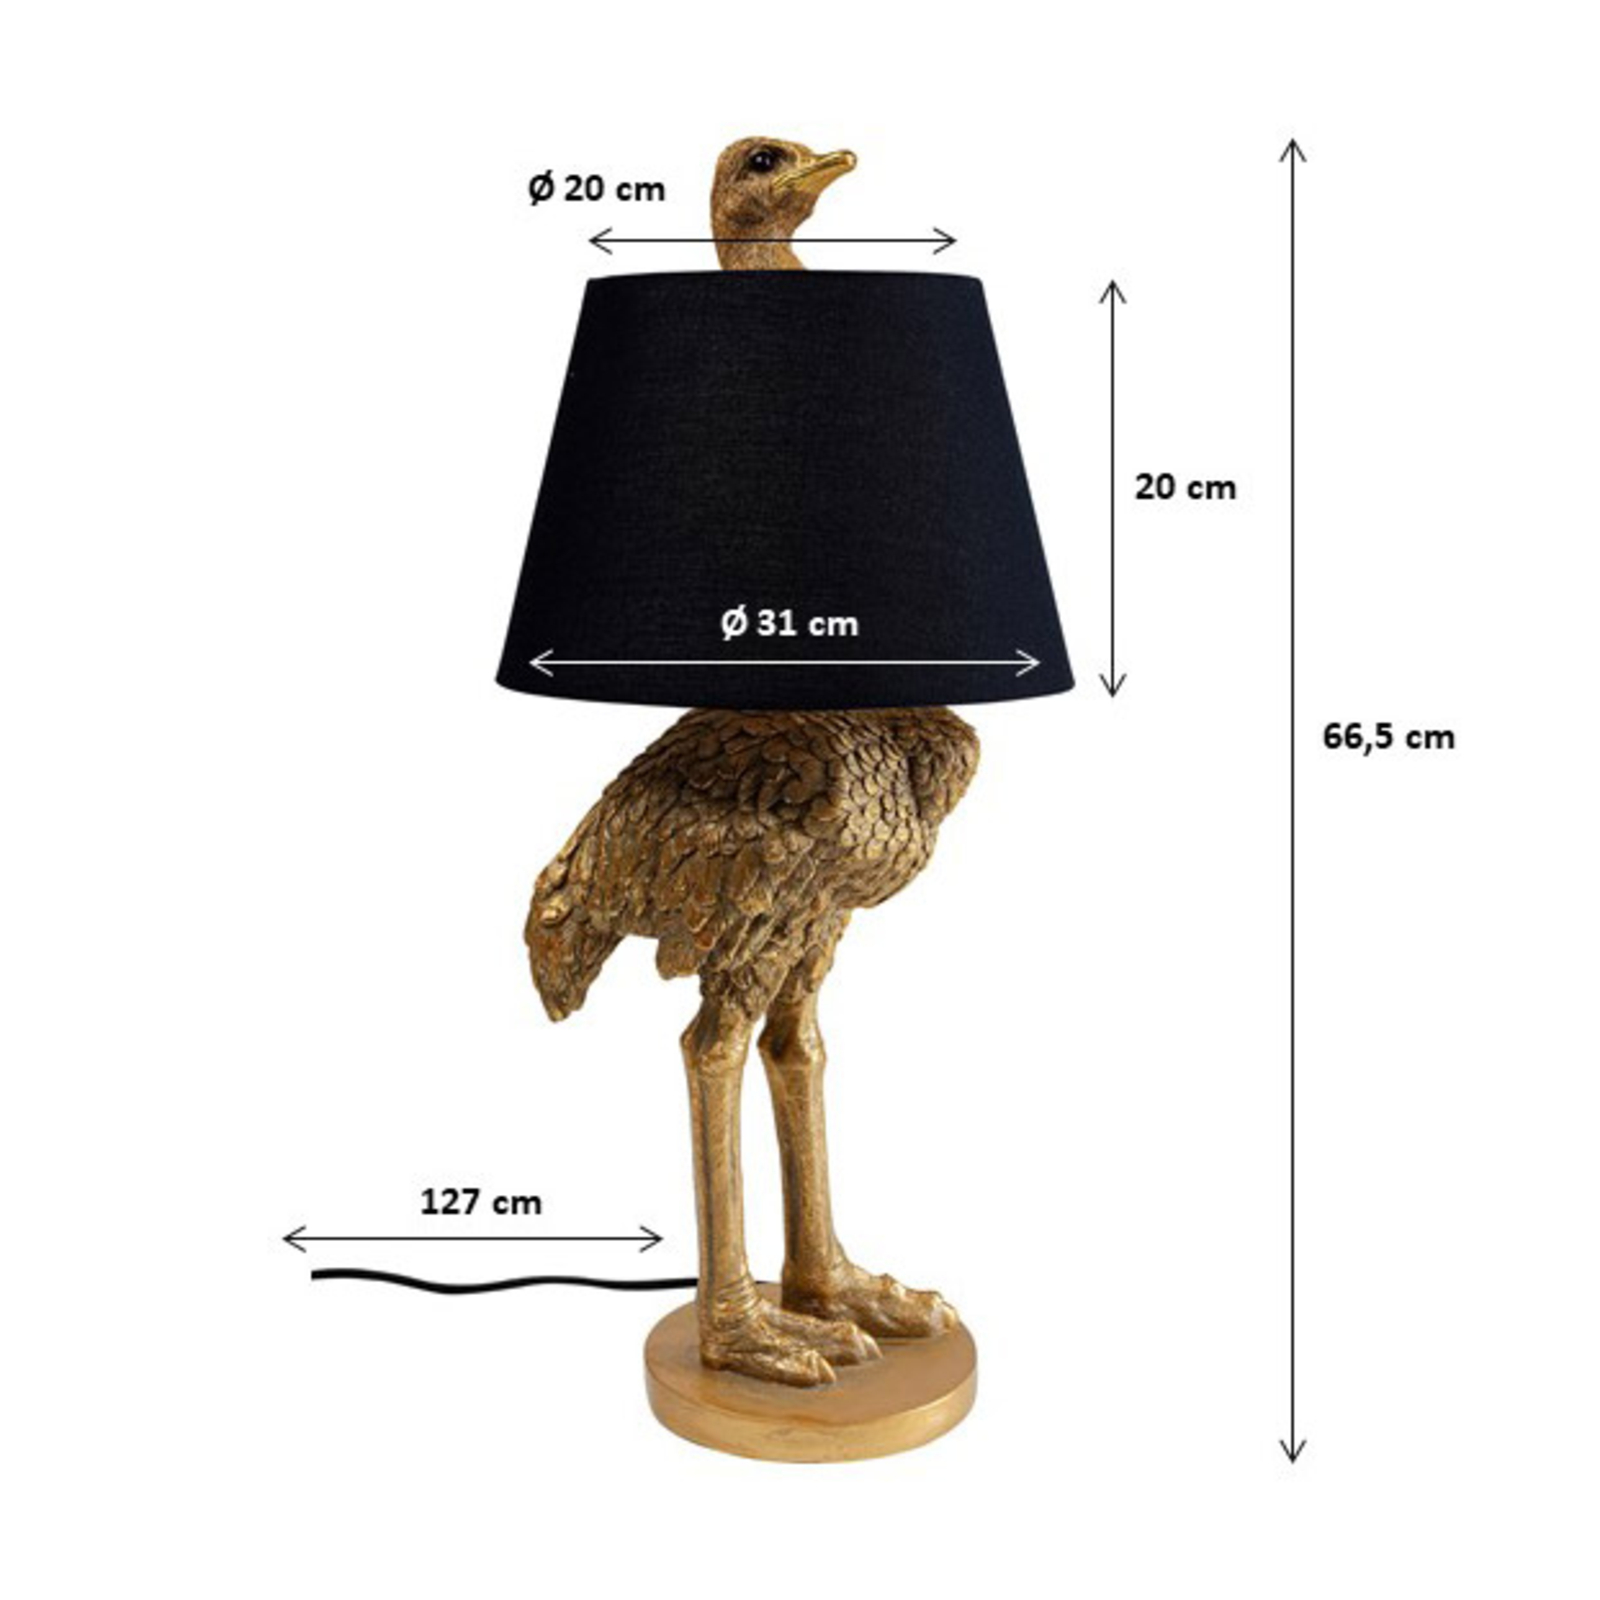 KAREN Lámpara de mesa Animal Ostrich con figura de avestruz